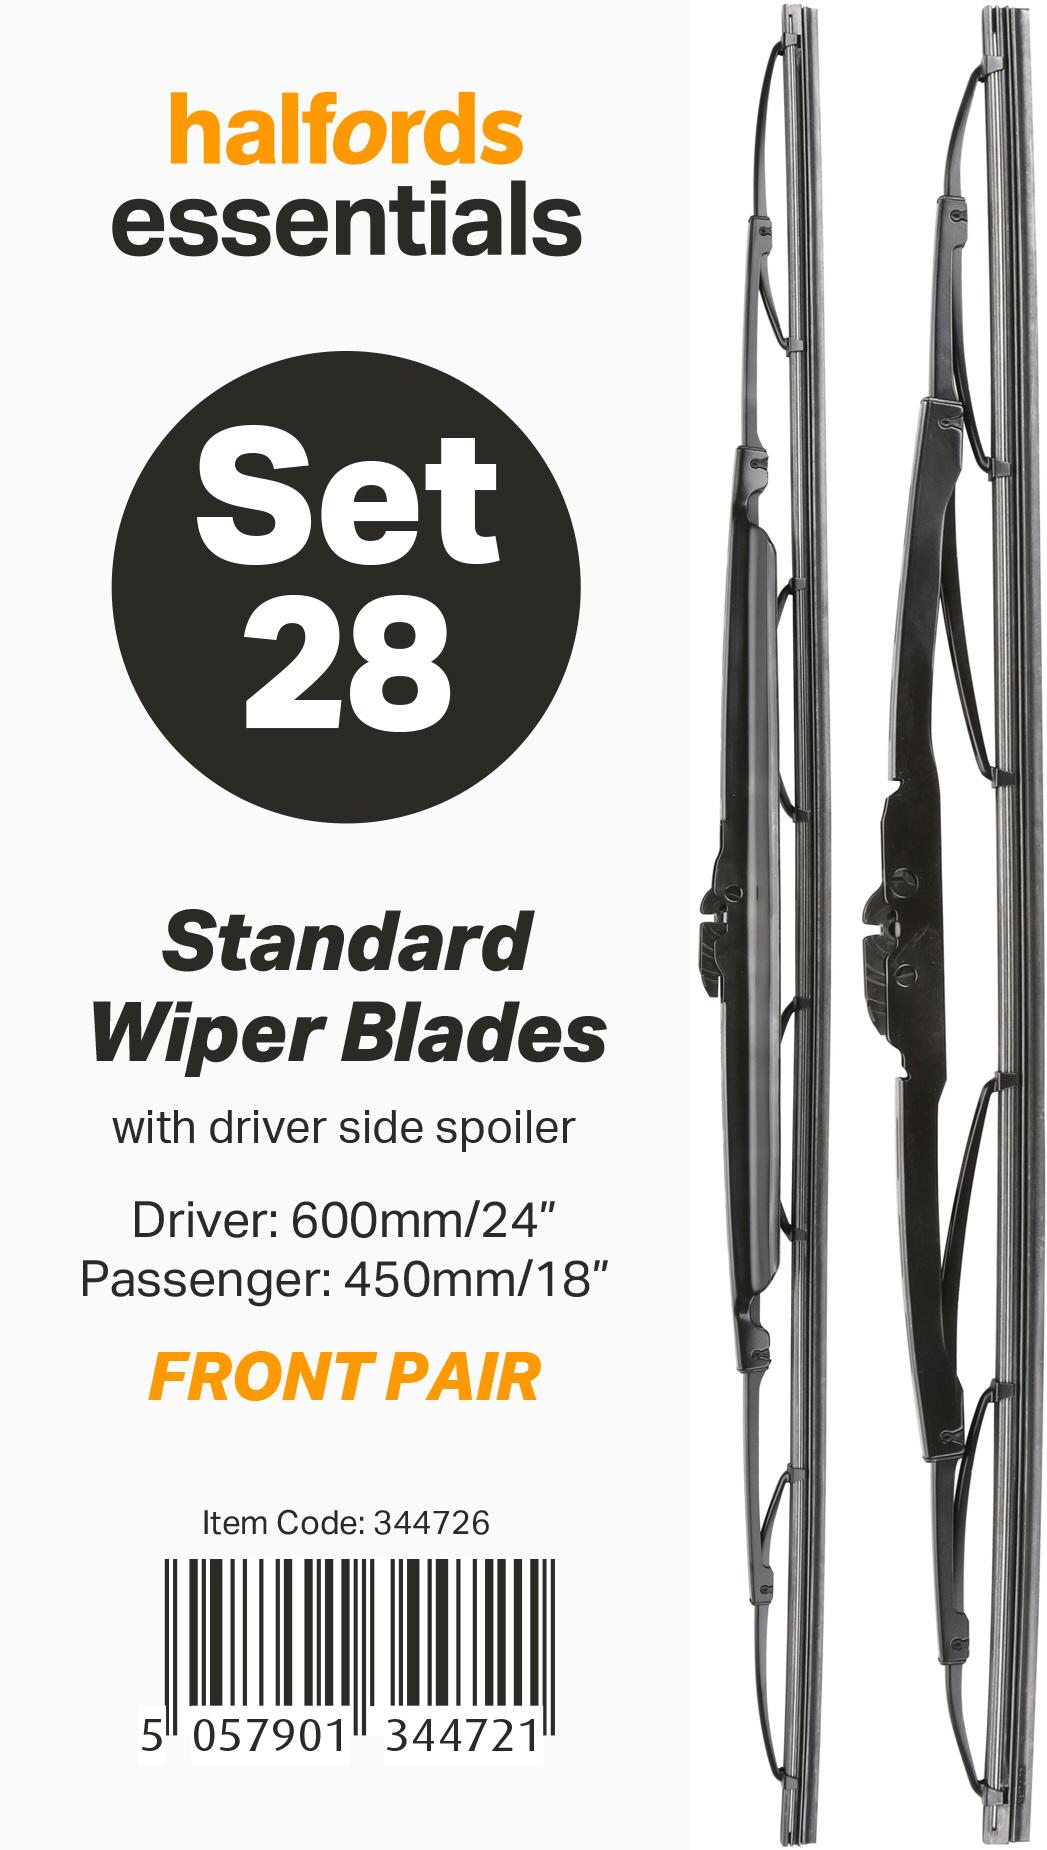 Halfords Essentials Wiper Blade Set 28